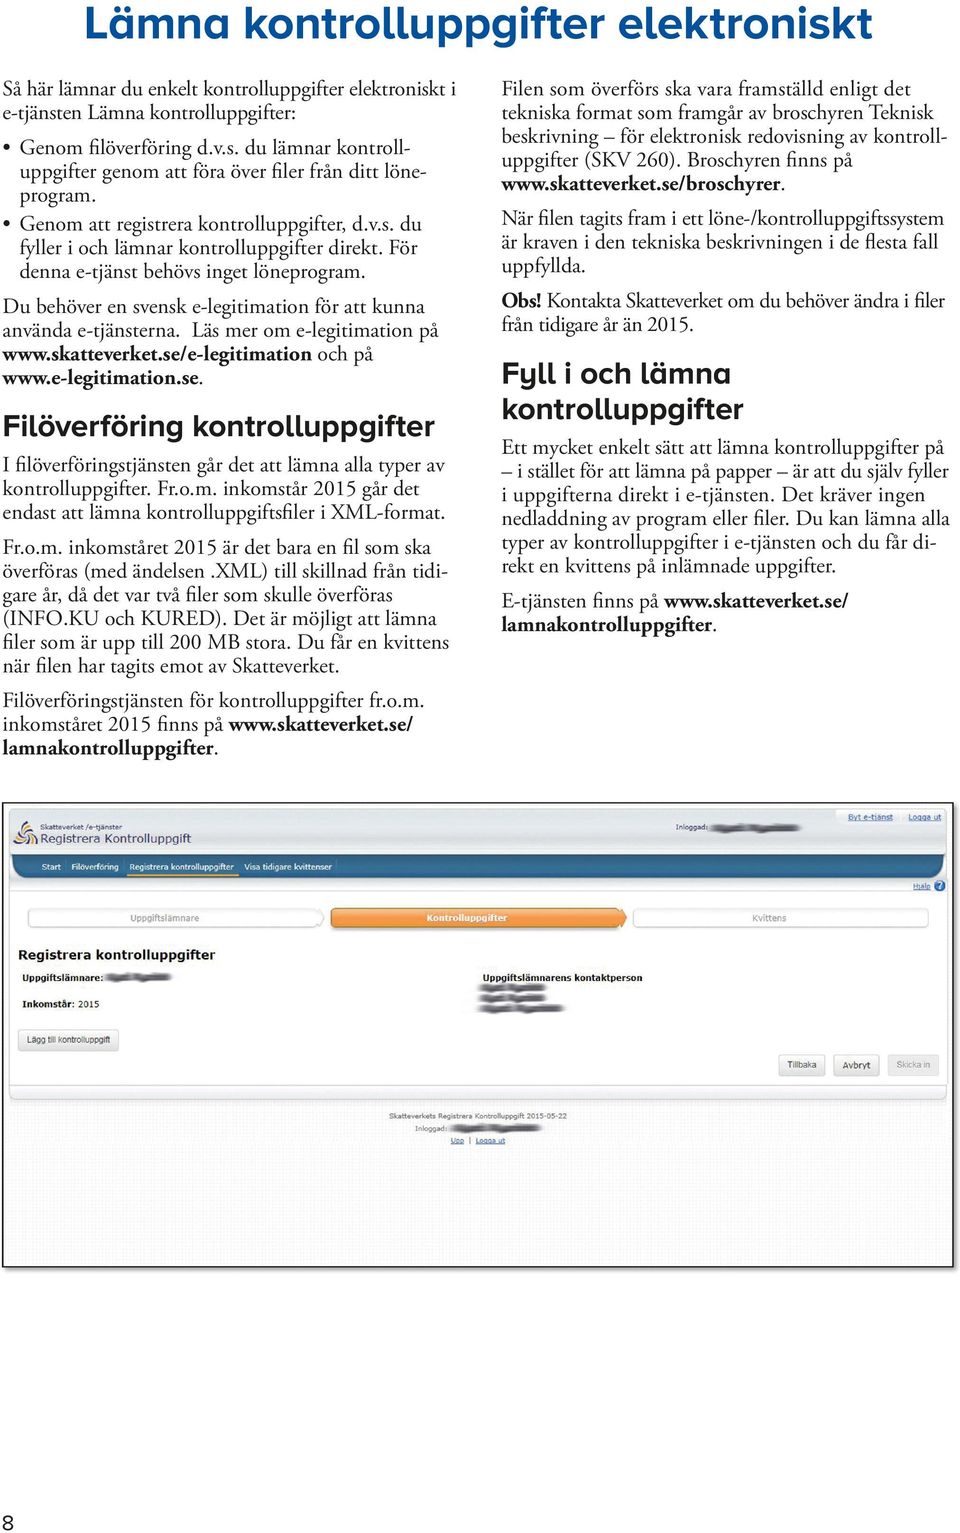 Läs mer om e-legitimation på www.skatteverket.se/e-legitimation och på www.e-legitimation.se. Filöverföring er I filöverföringstjänsten går det att lämna alla typer av er. Fr.o.m. inkomstår 2015 går det endast att lämna sfiler i XML-format.